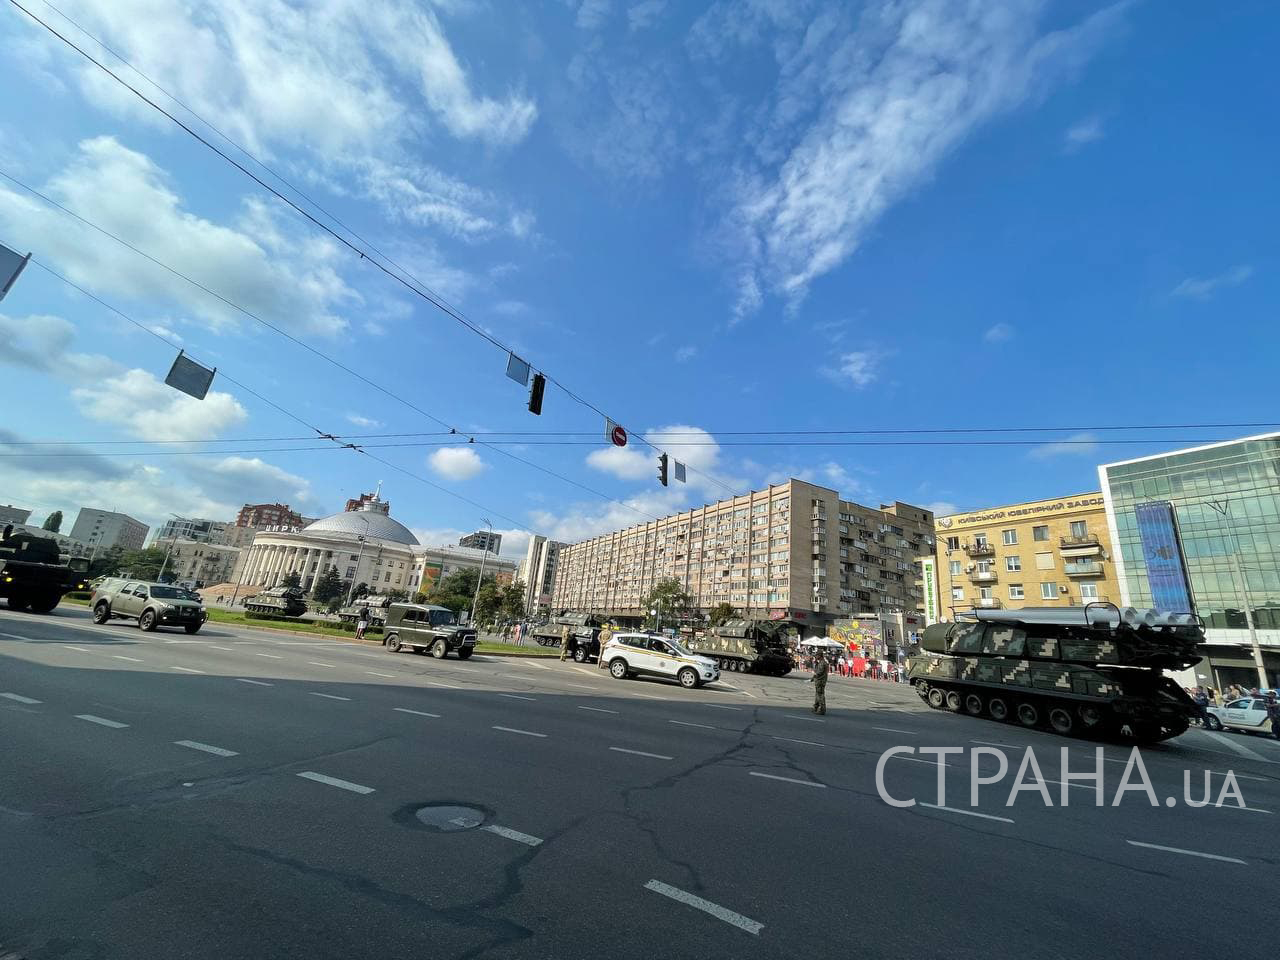 Фото техники в Киеве . "Страна"